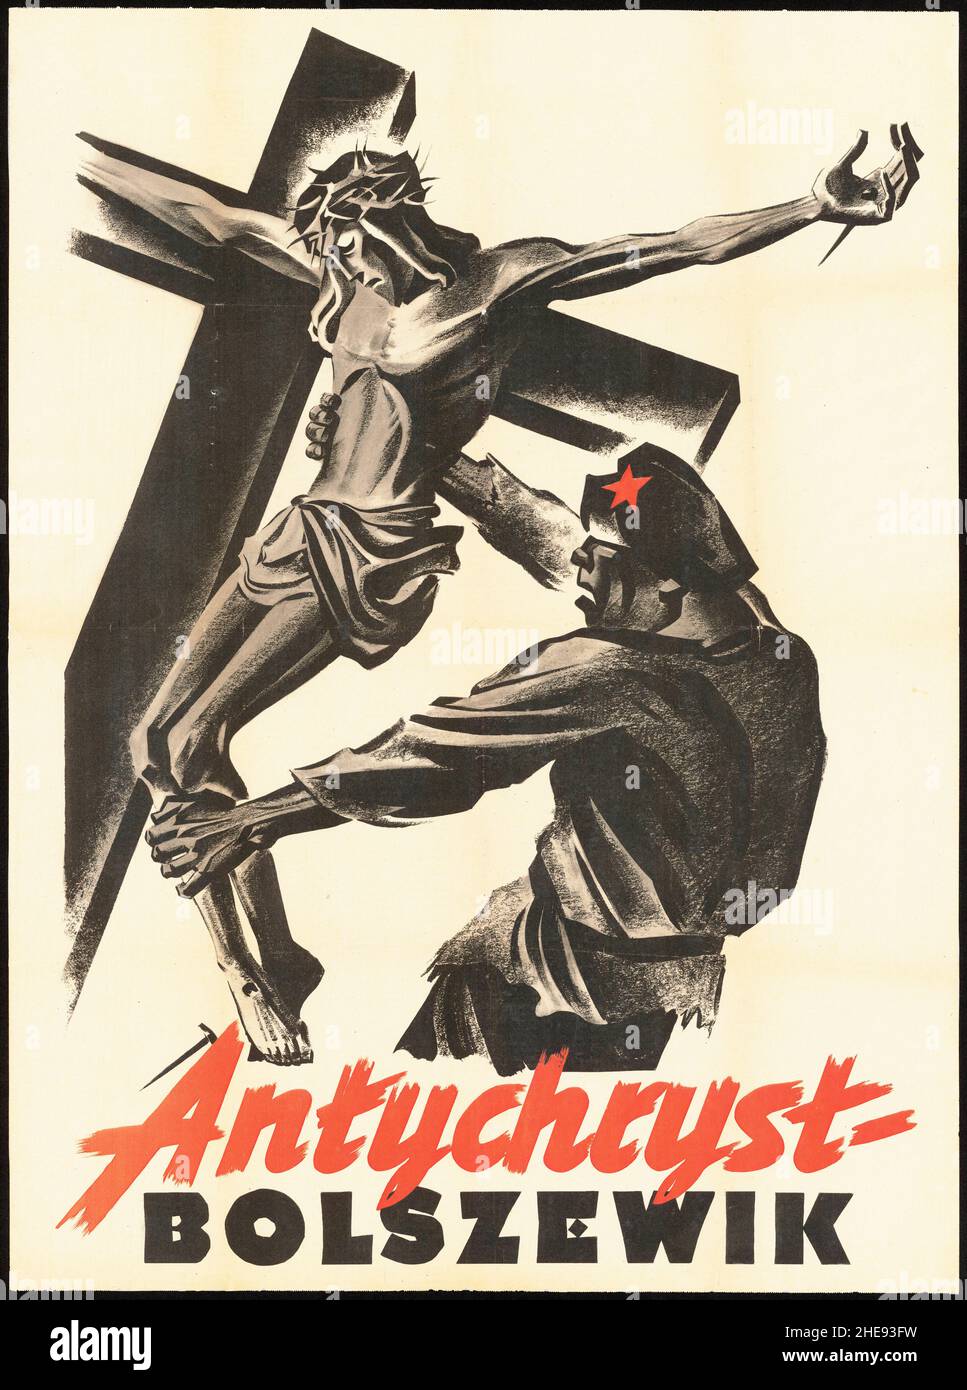 Un poster di propaganda polacca anti-bolscevica che mostra un soldato dell'esercito rosso che abbassa una statua di cristo sulla croce con la didascalia "Anticristo bolscevico" Foto Stock